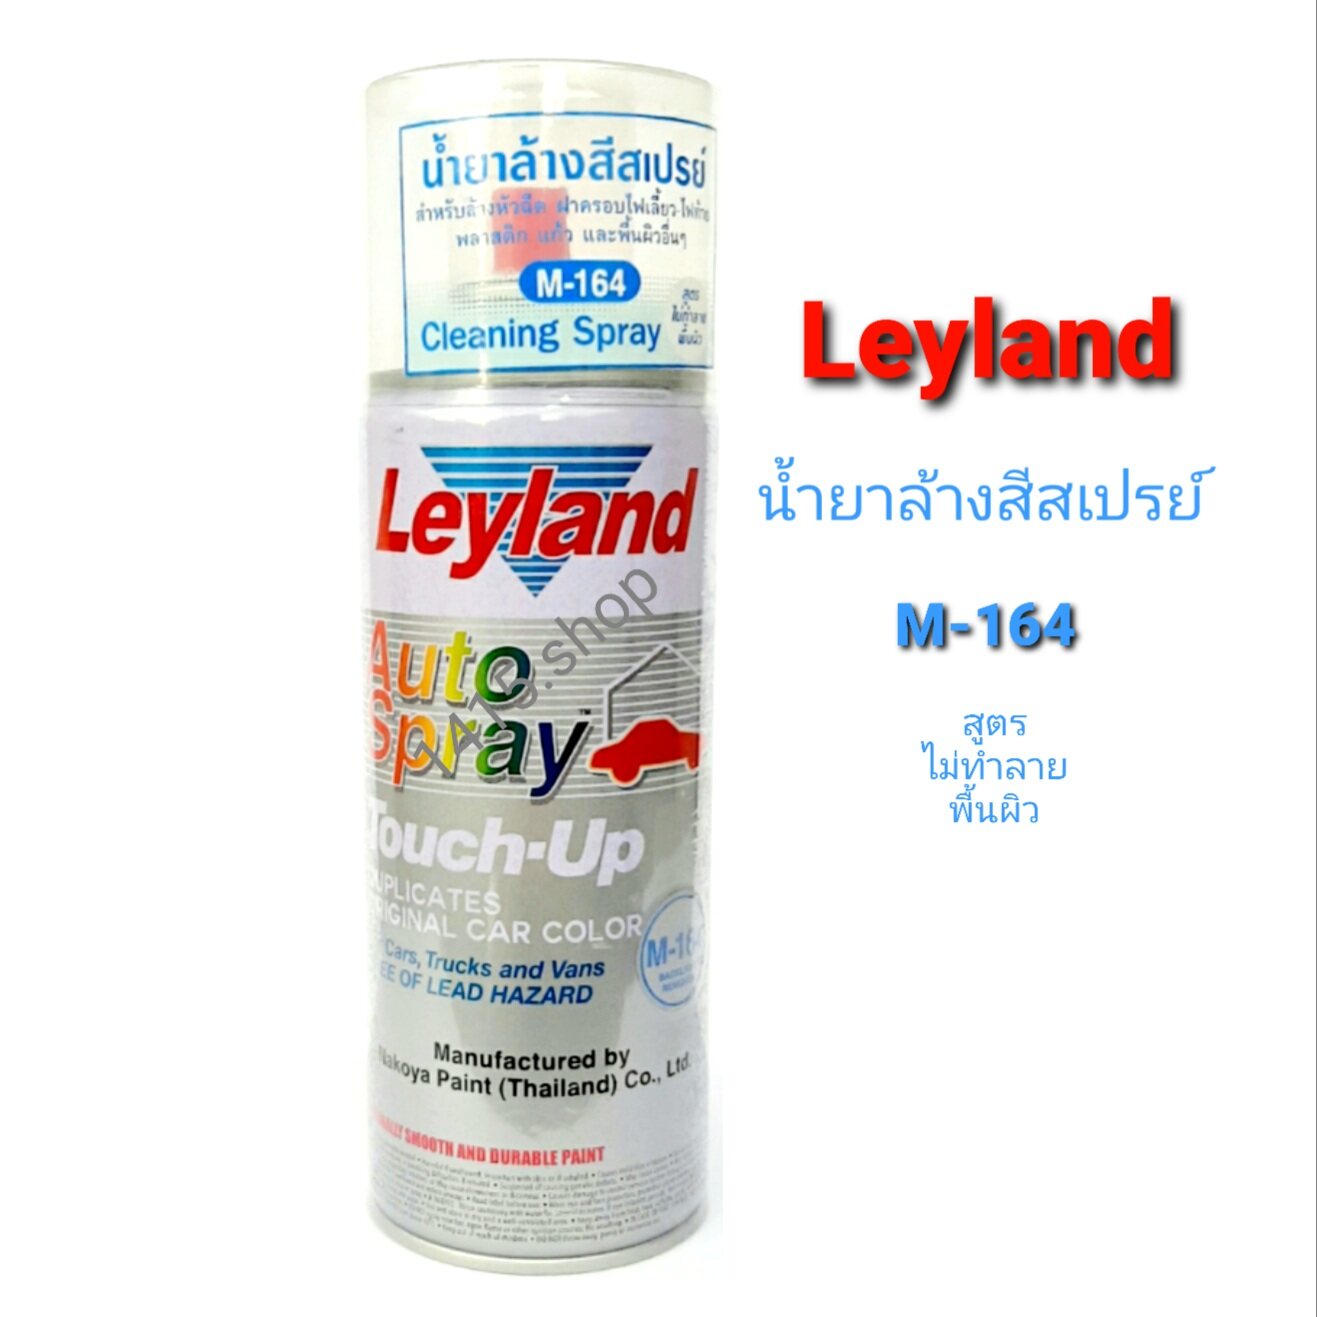 น้ำยาล้างสีสเปรย์ เลย์แลนด์ M-164 Cleaning Spray สูตรไม่ทำลาย พื้นผิว Leyland Auto Spray